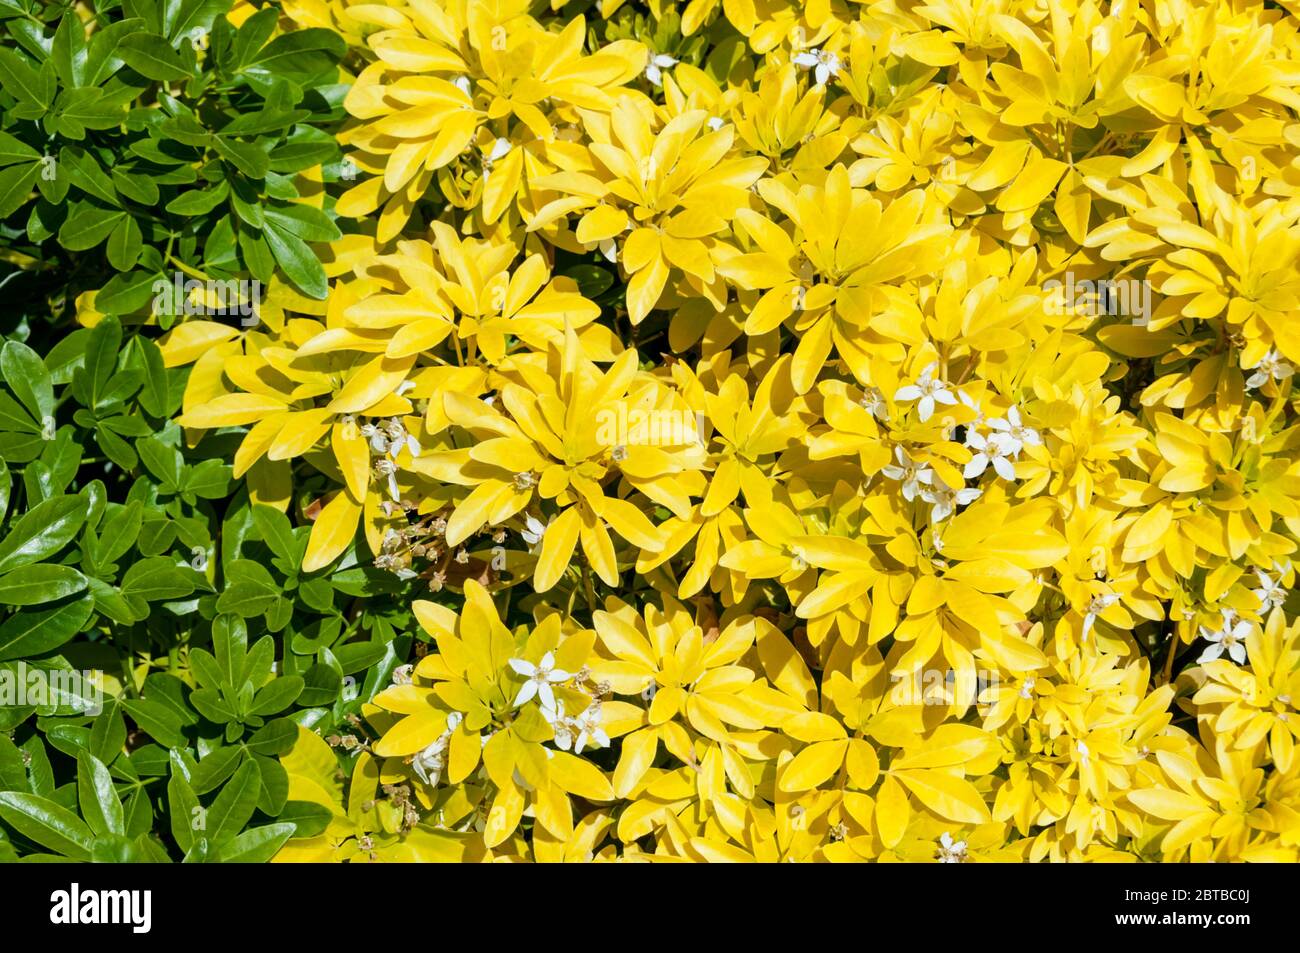 Una pianta di arancia messicana, Choisya ternata 'Sundance', con foglie che cominciano a tornare dal giallo al loro colore verde naturale. Foto Stock